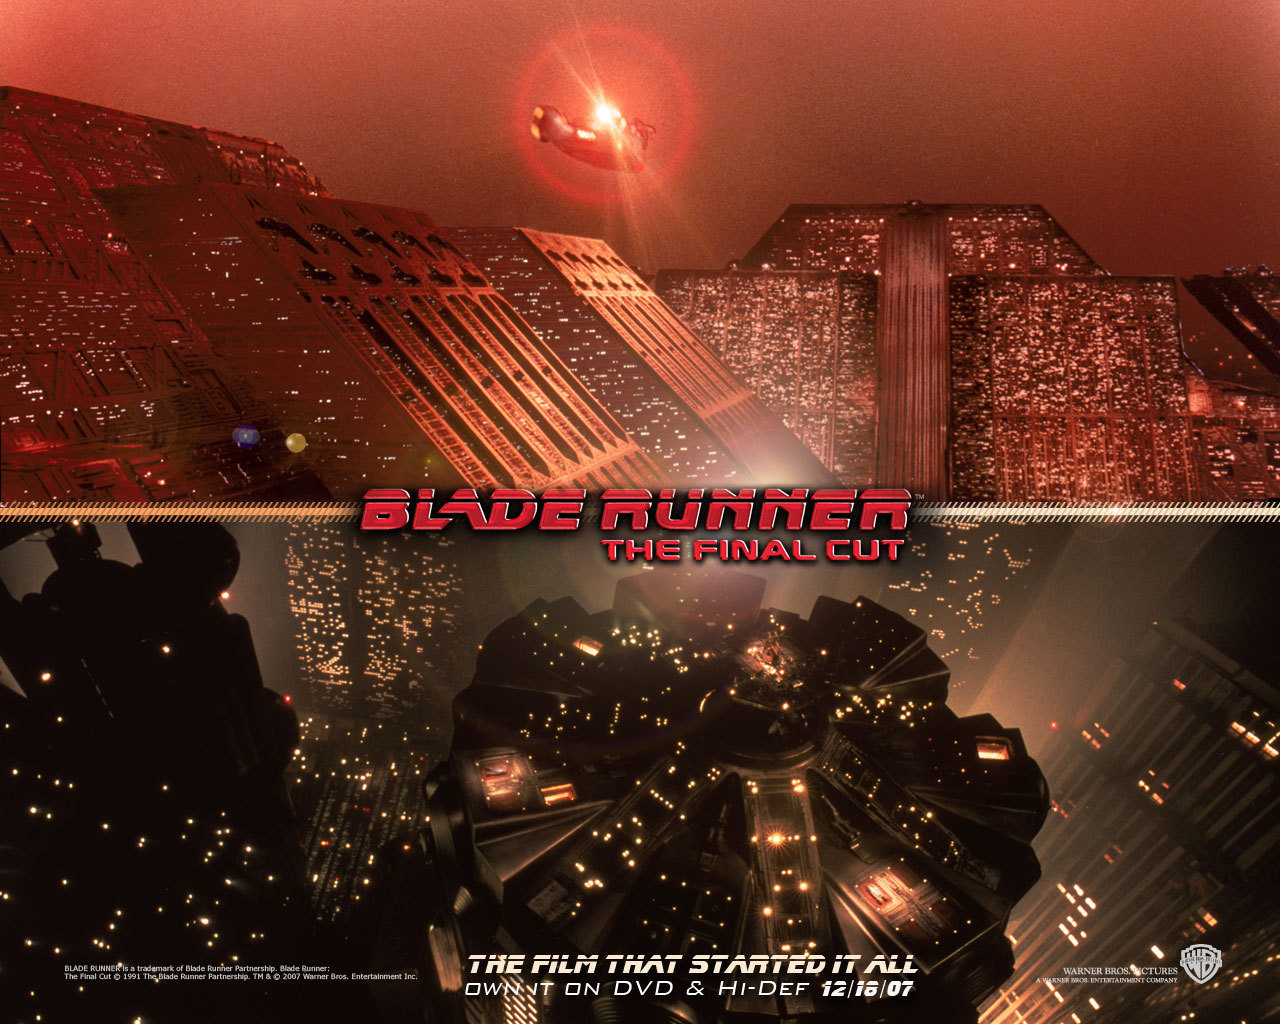 Official Blade Runner 壁紙 Blade Runner 壁紙 ファンポップ